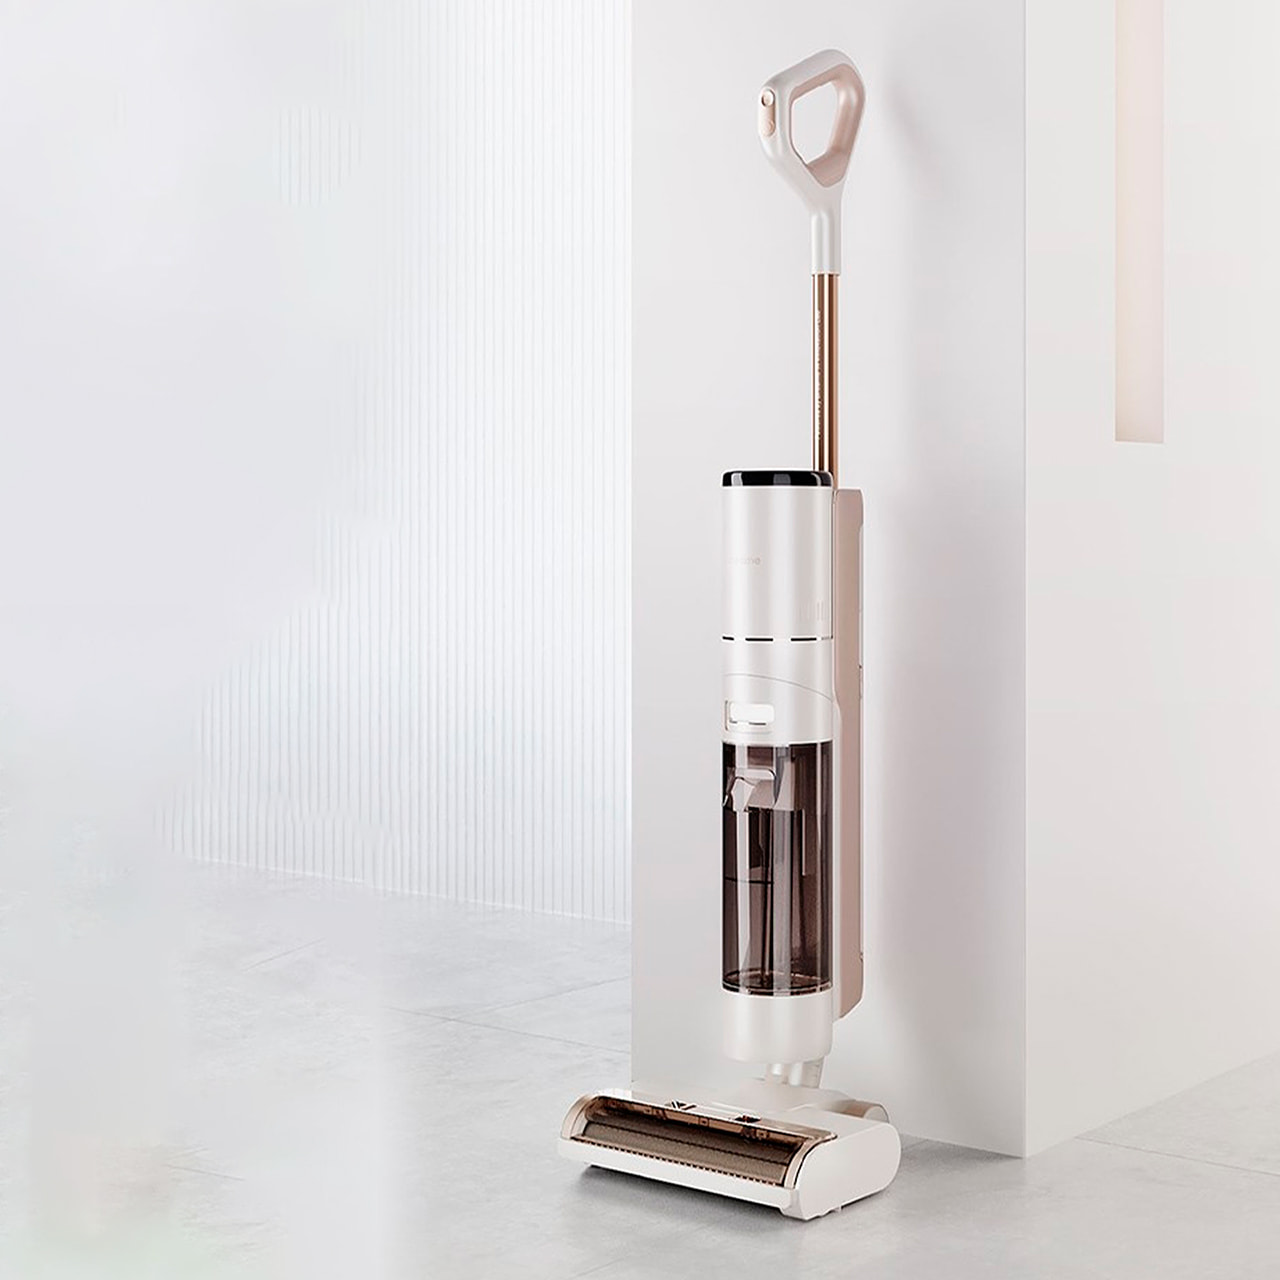 Вертикальный пылесос Dreame T12 выполнен в минималистичном хай-тек дизайне